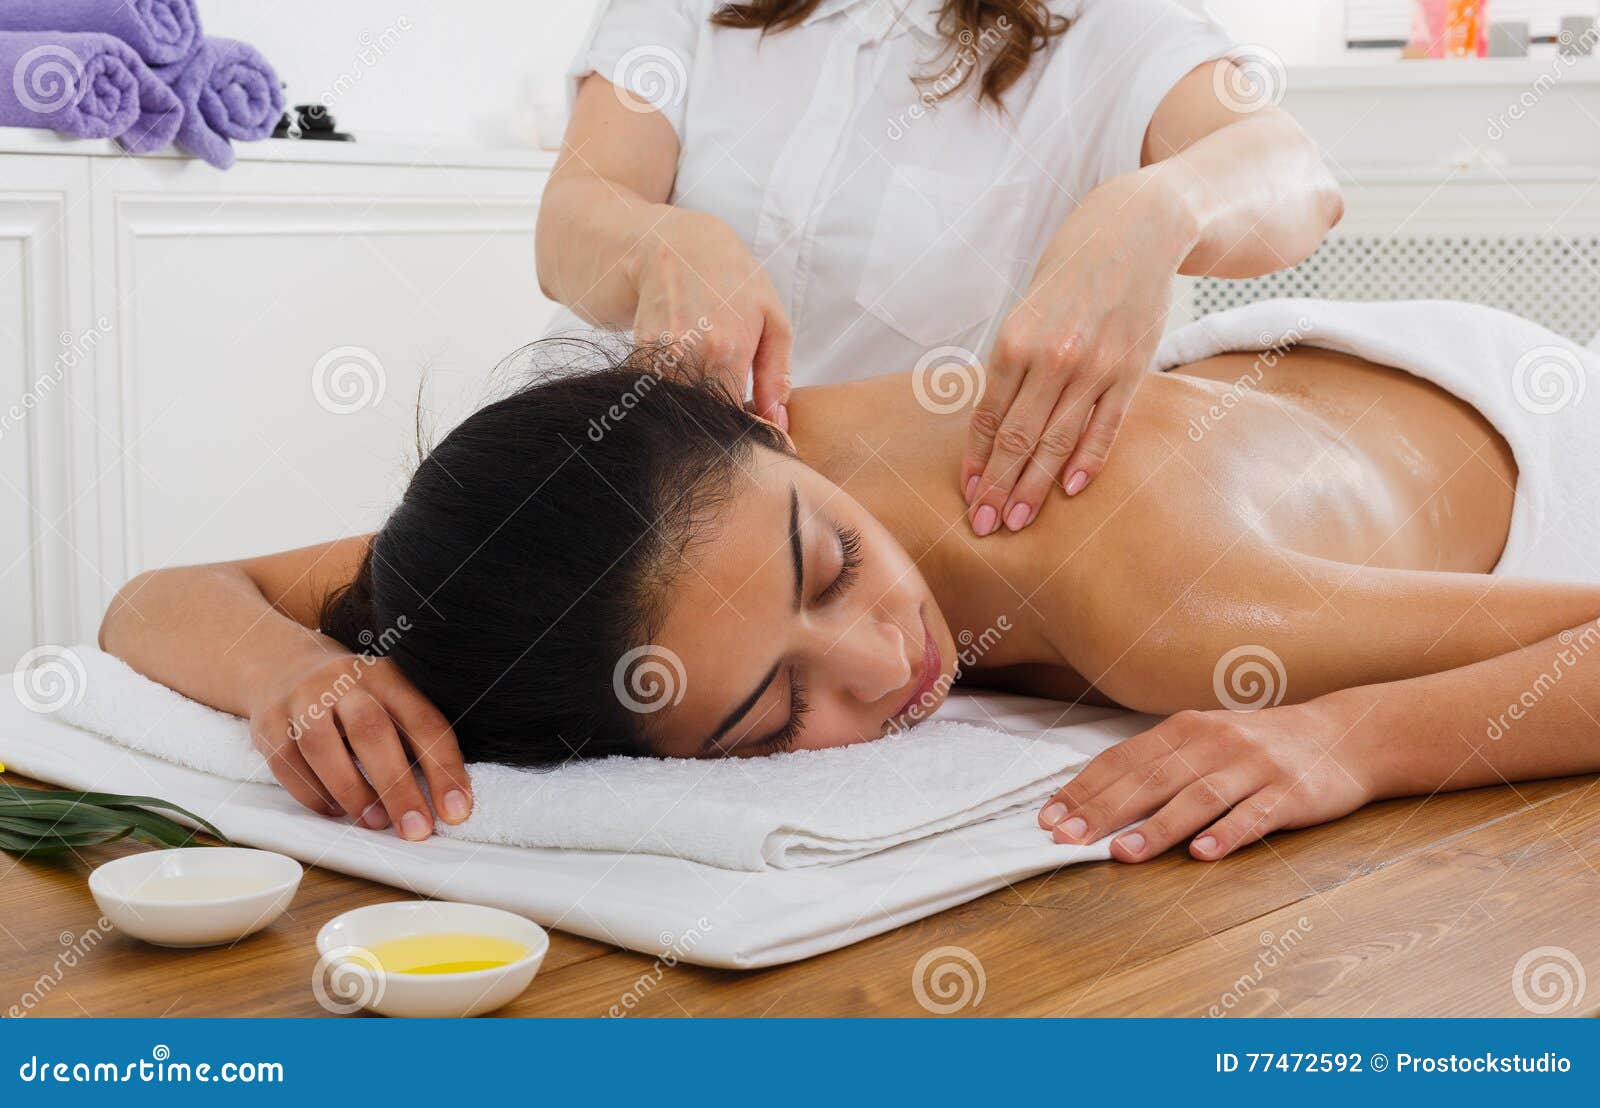 woman massagist make body massage in spa wellness center